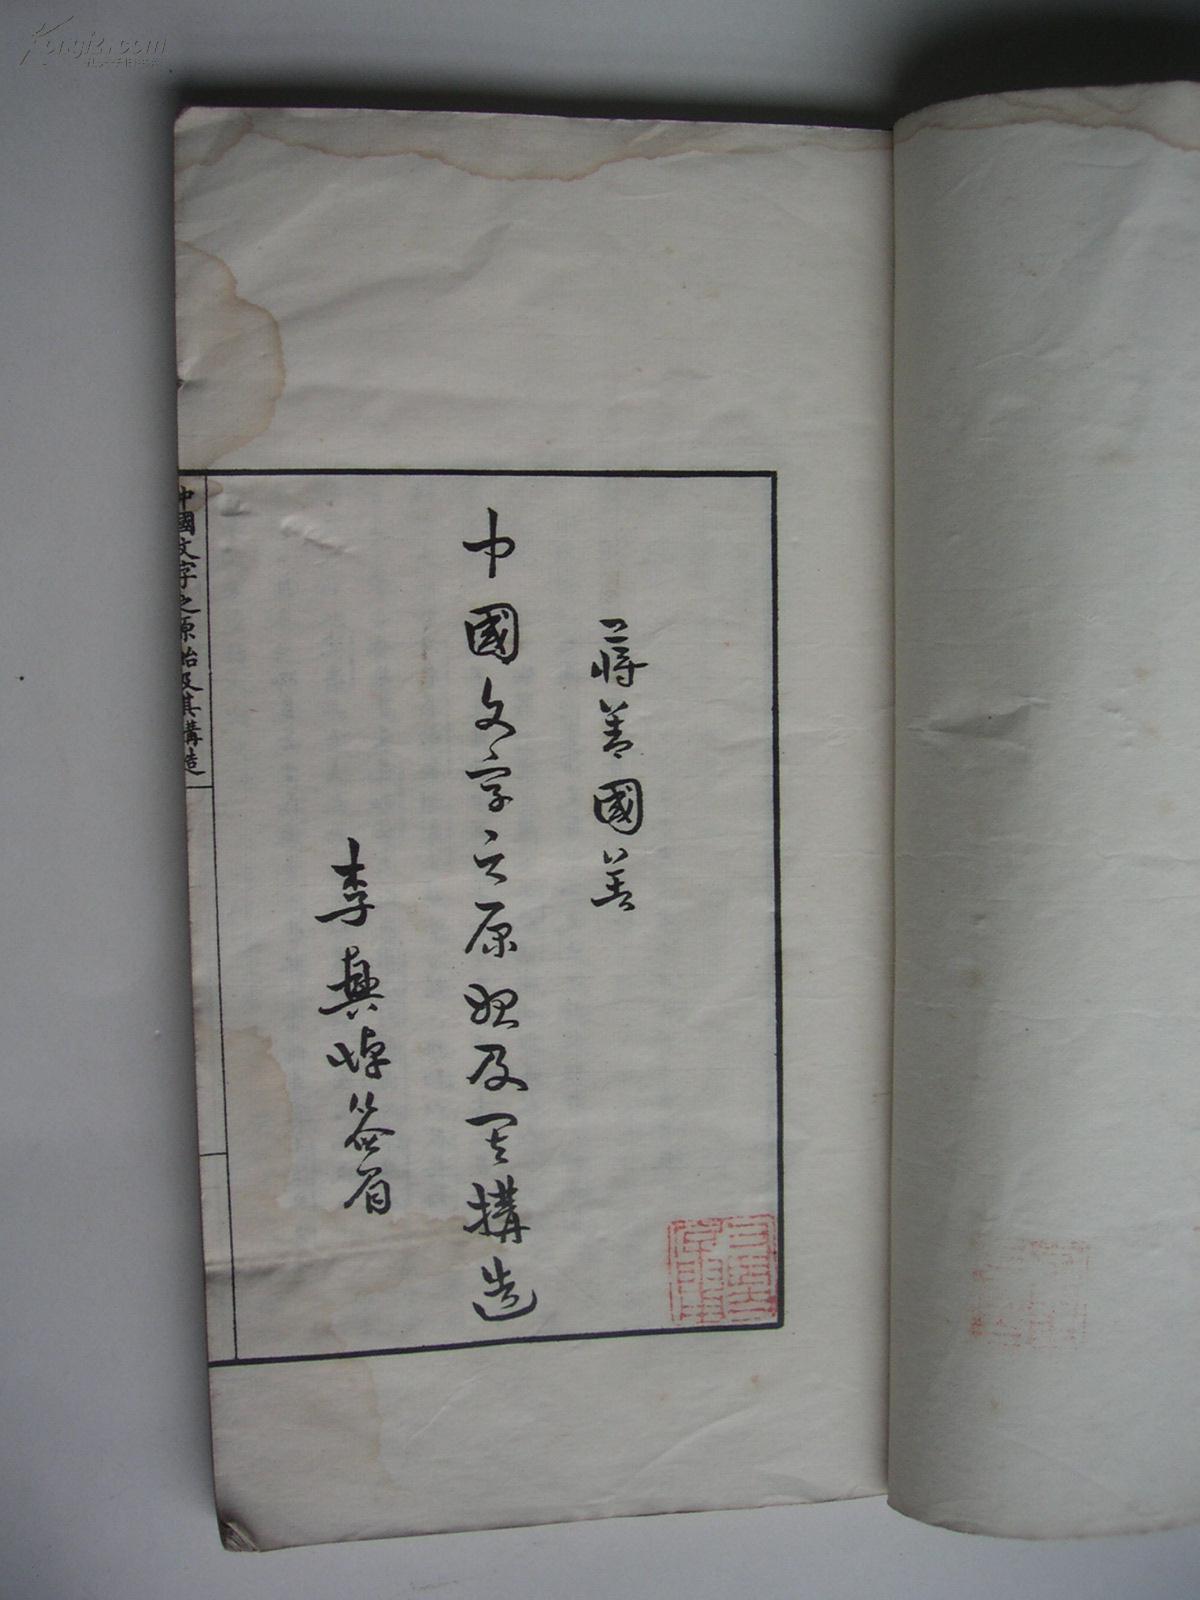 中国文字之原始及其构造【民国排印本。内有大量图版。】